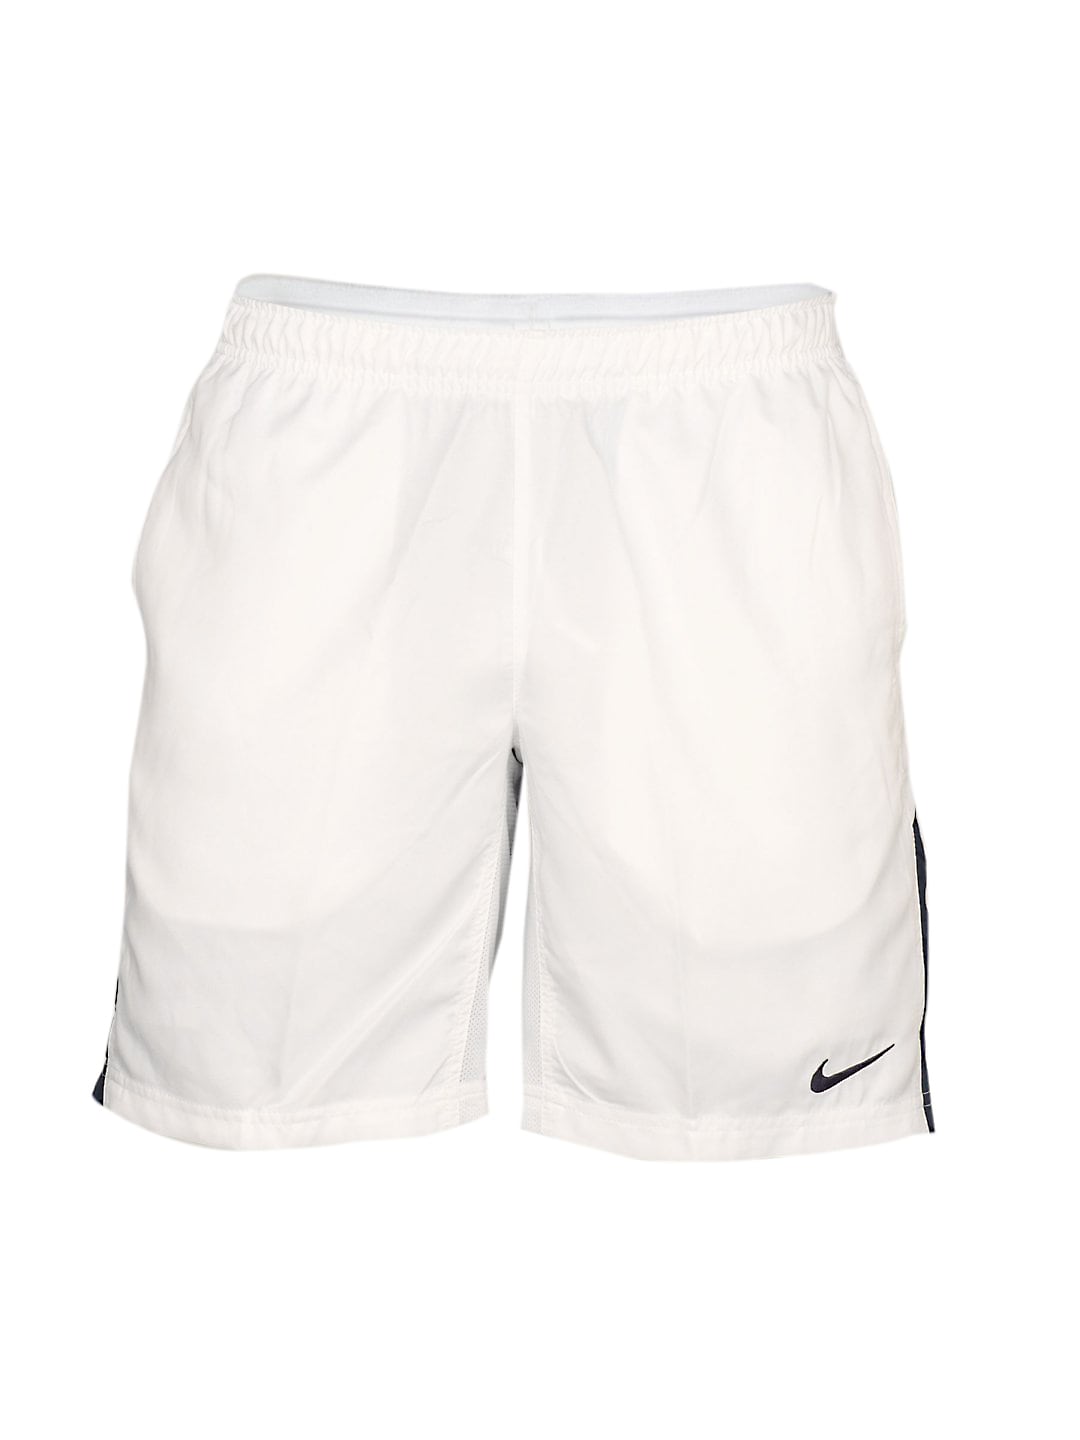 Nike Men's Woven White Short